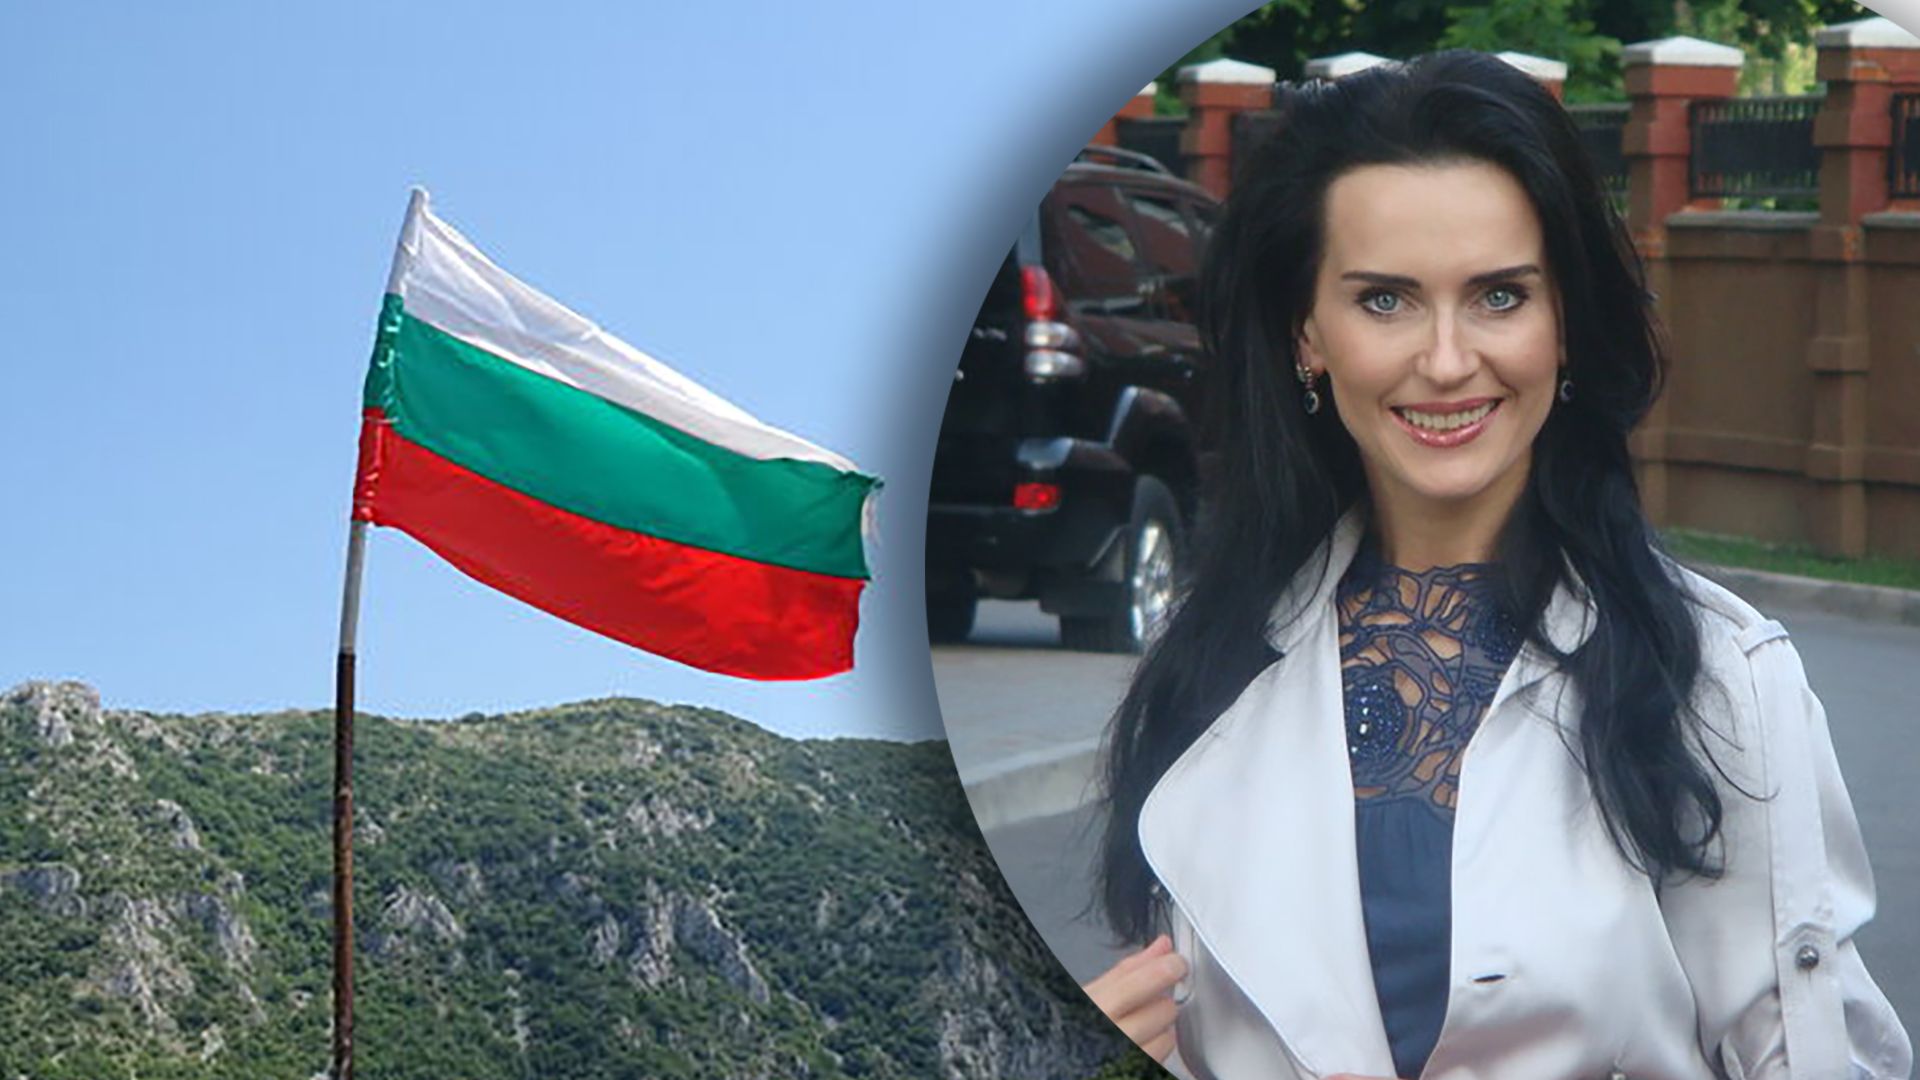 Посол Олеся Илащук начала работу в Болгарии, несмотря на скандал